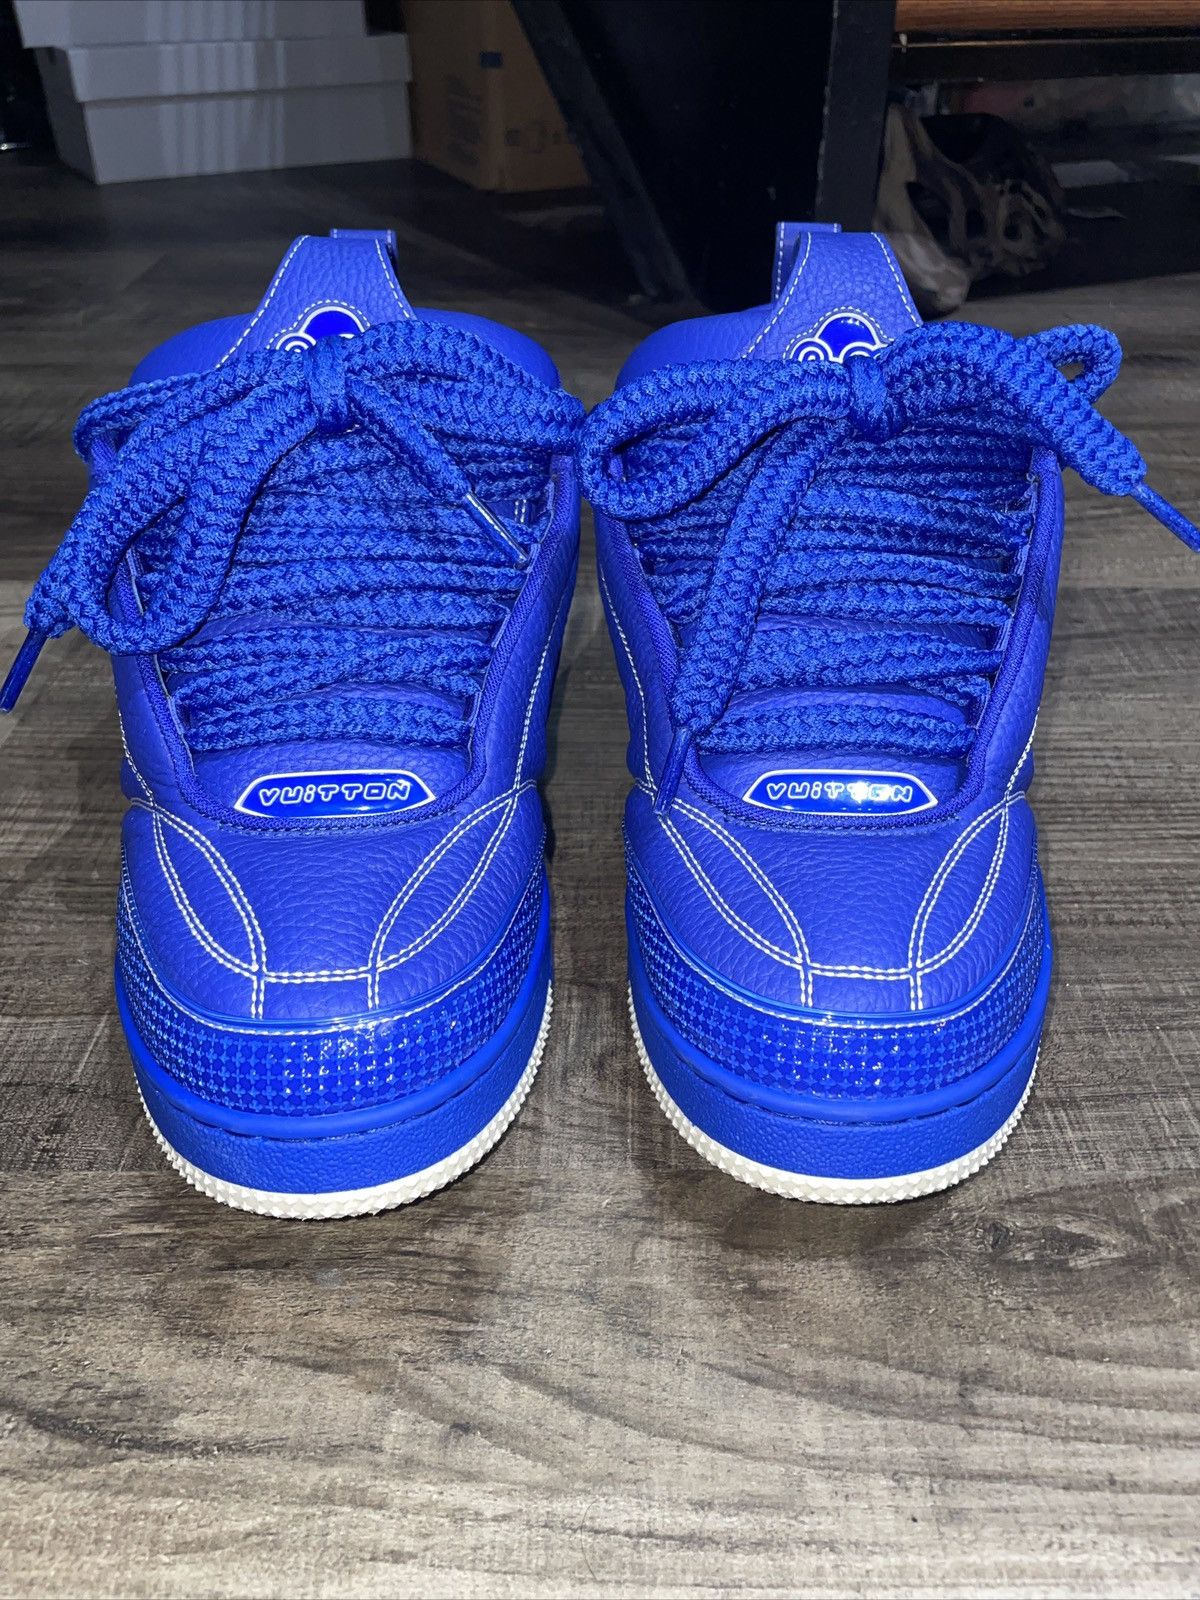 Louis Vuitton LV Skate Sneaker Blue. Size 08.0